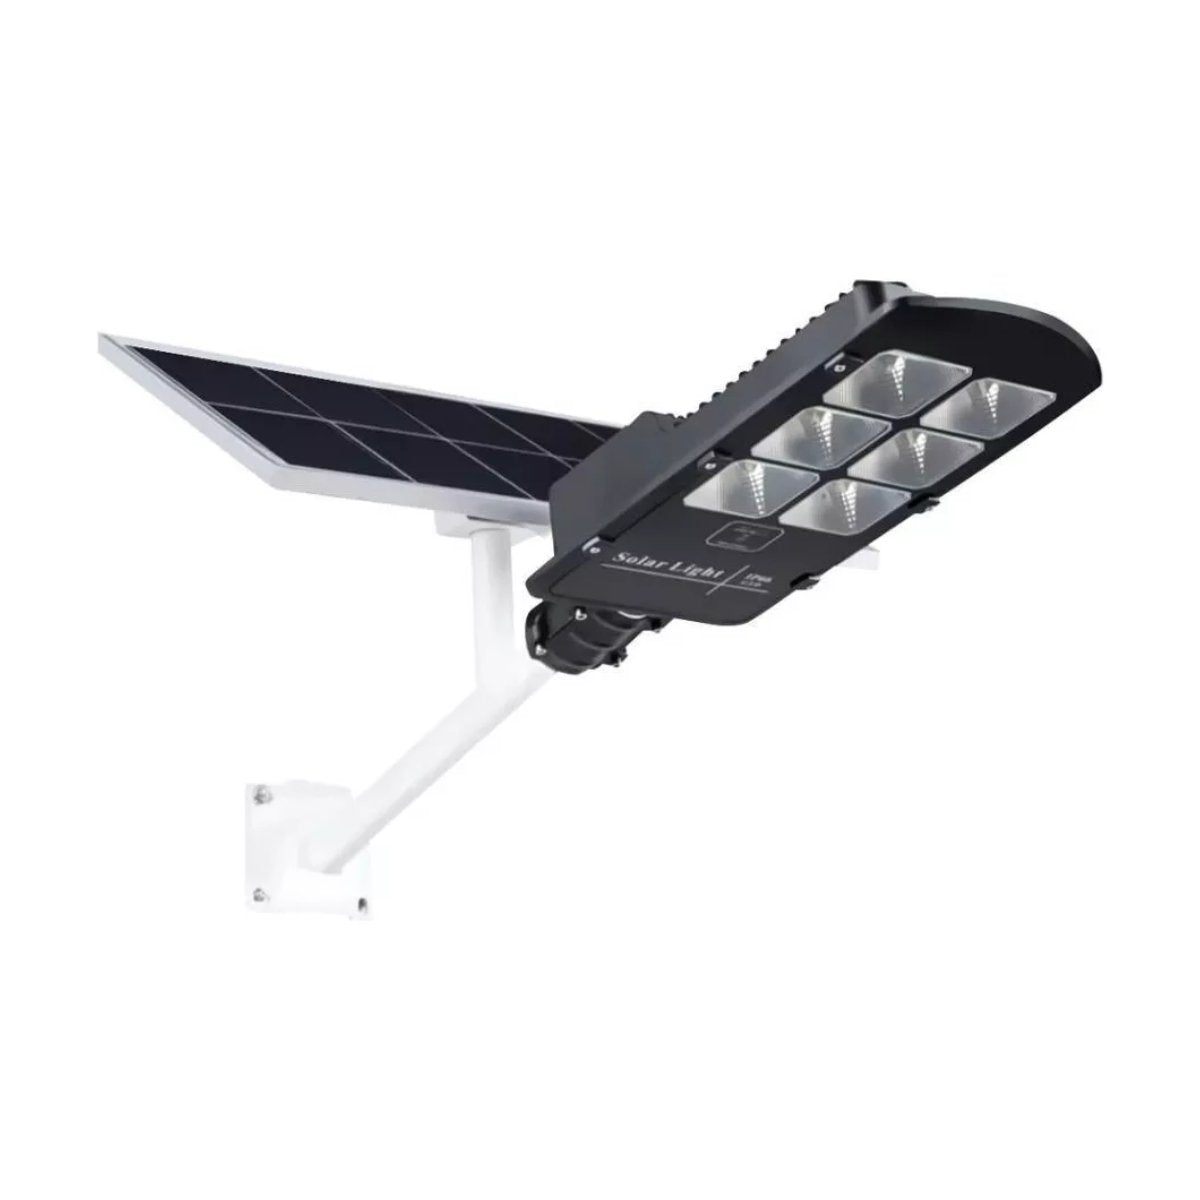 Foco Solar LED De Exterior Con Panel Solar y Sensor De Movim